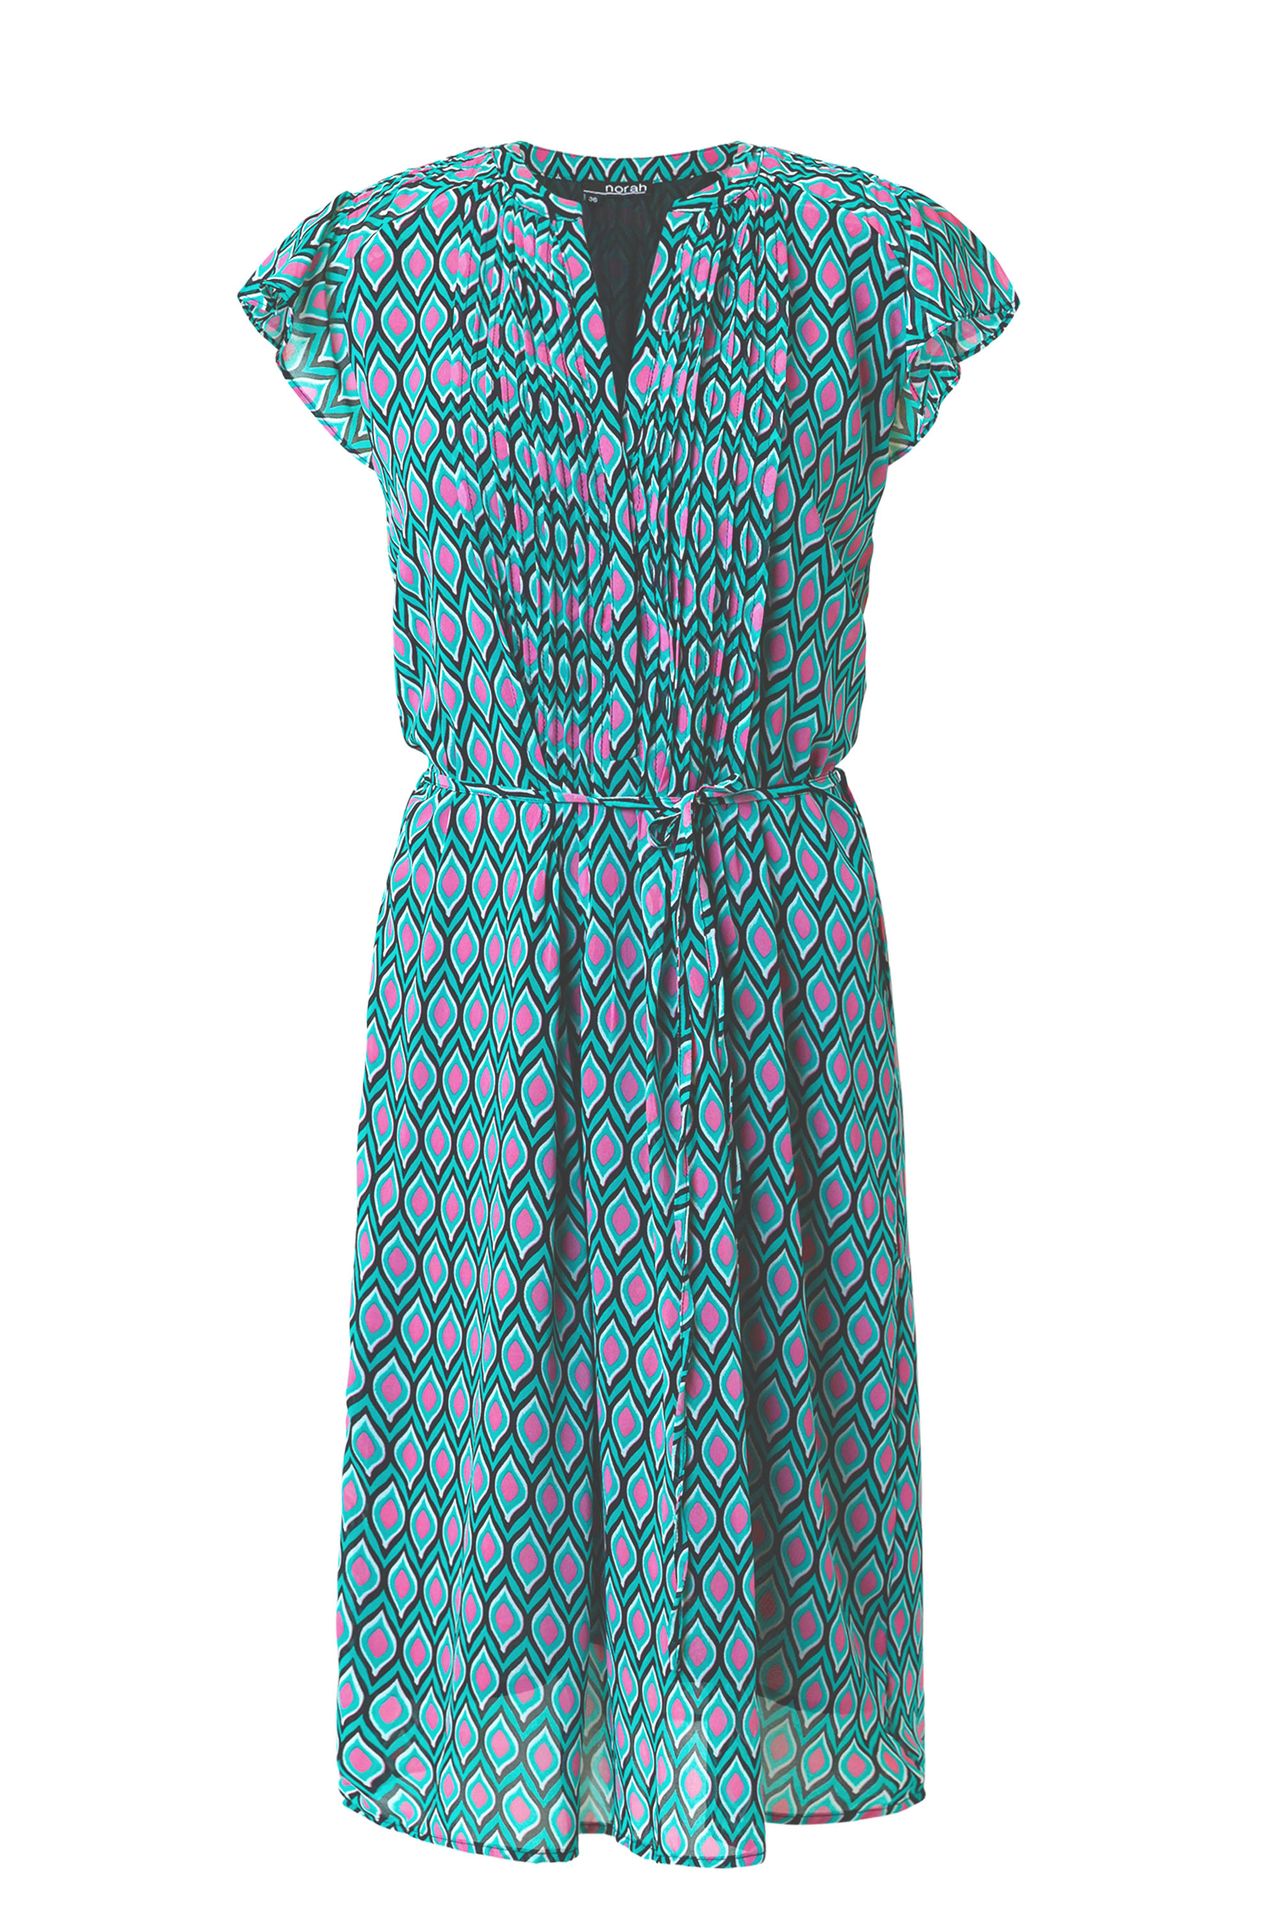 Norah Midi jurk groen jade 213736-574